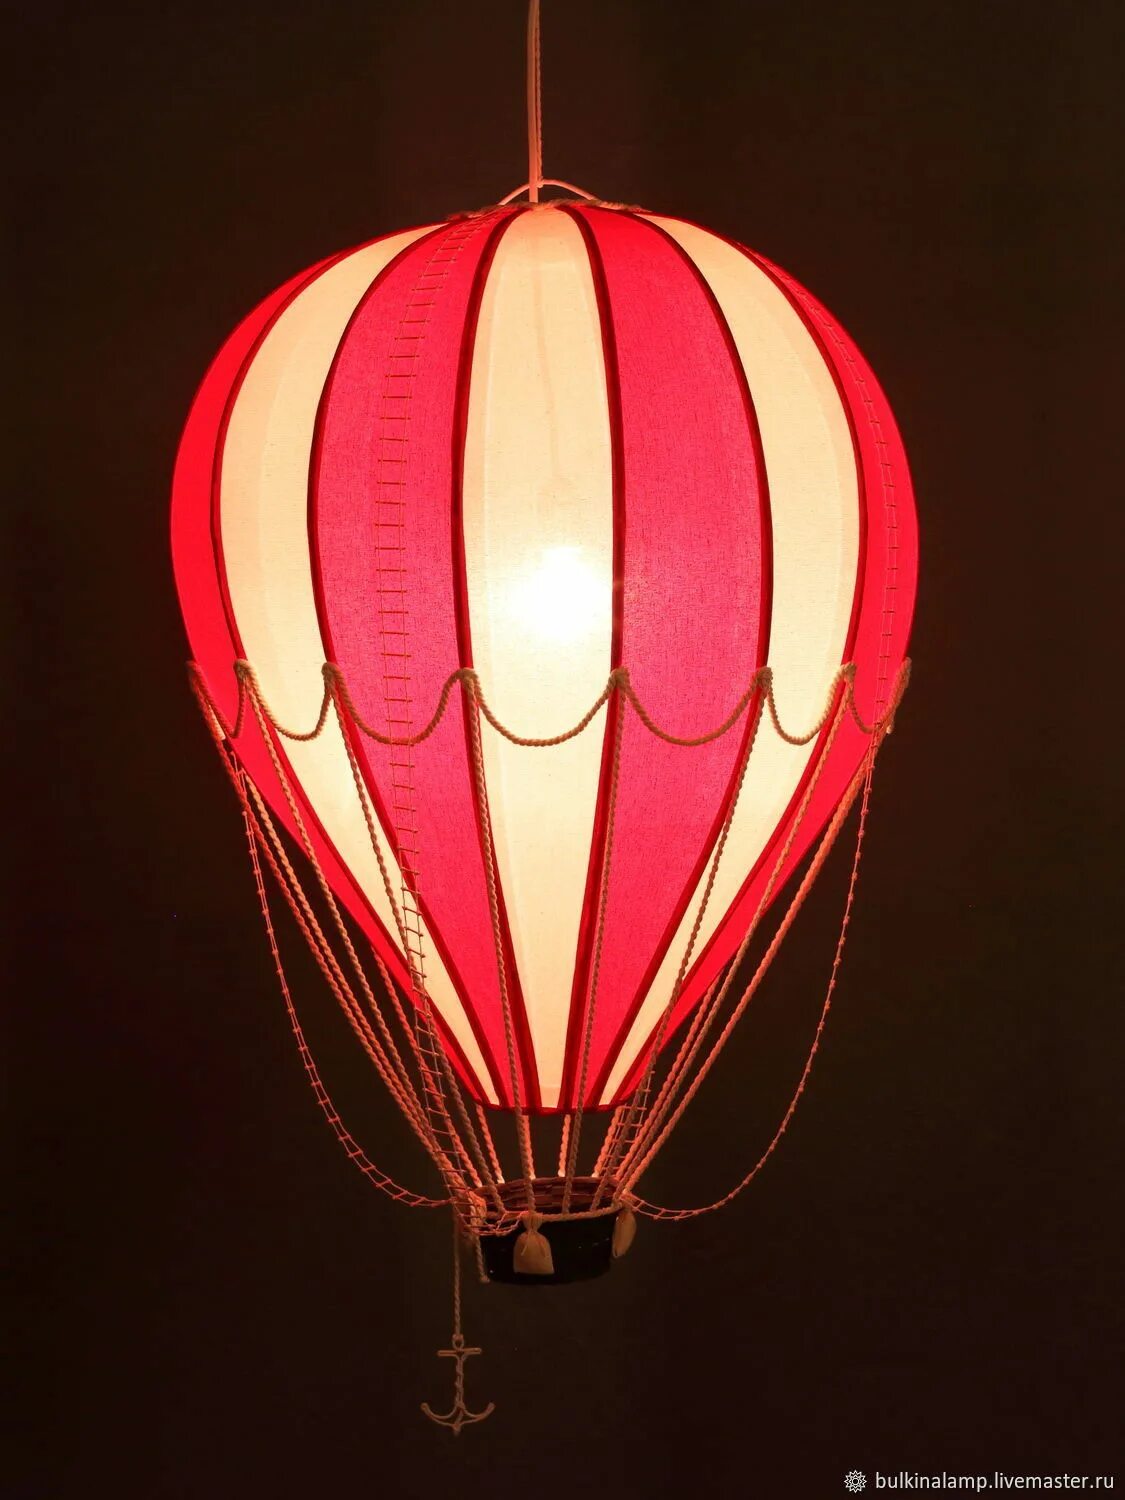 Светильники в виде шаров. Потолочный светильник Сolored Balloon. Лампа воздушный шар. Светильники в виде воздушных шаров. Люстра в виде воздушного шара.